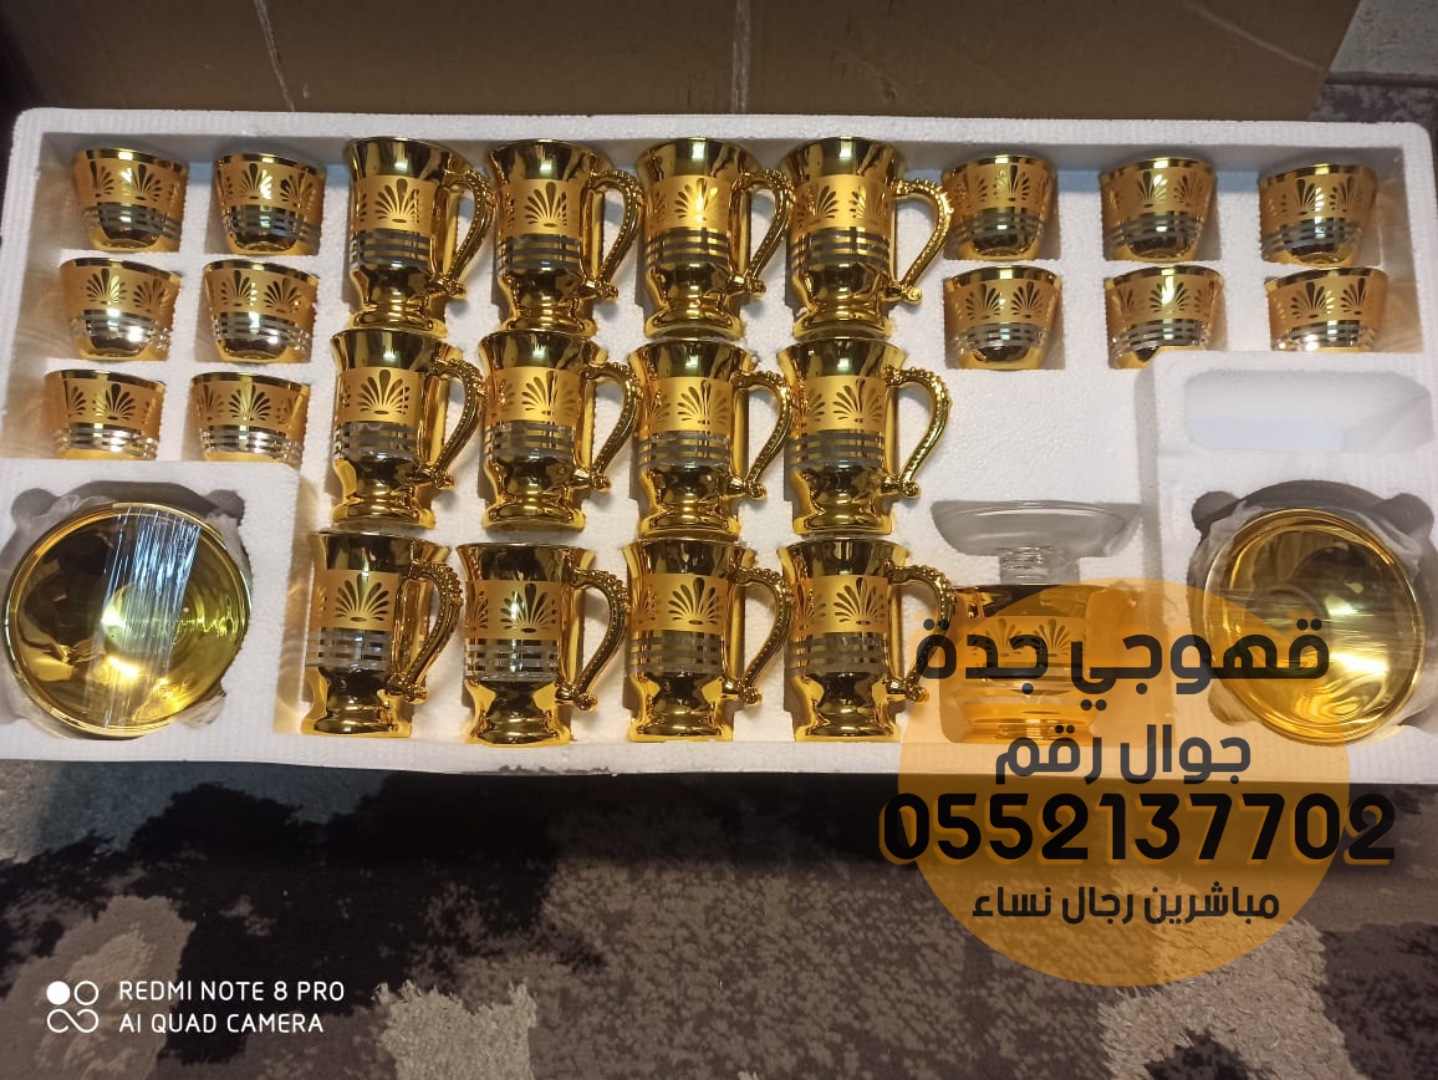 مباشرات قهوجيات قهوجي وصبابين قهوة في جدة 0552137